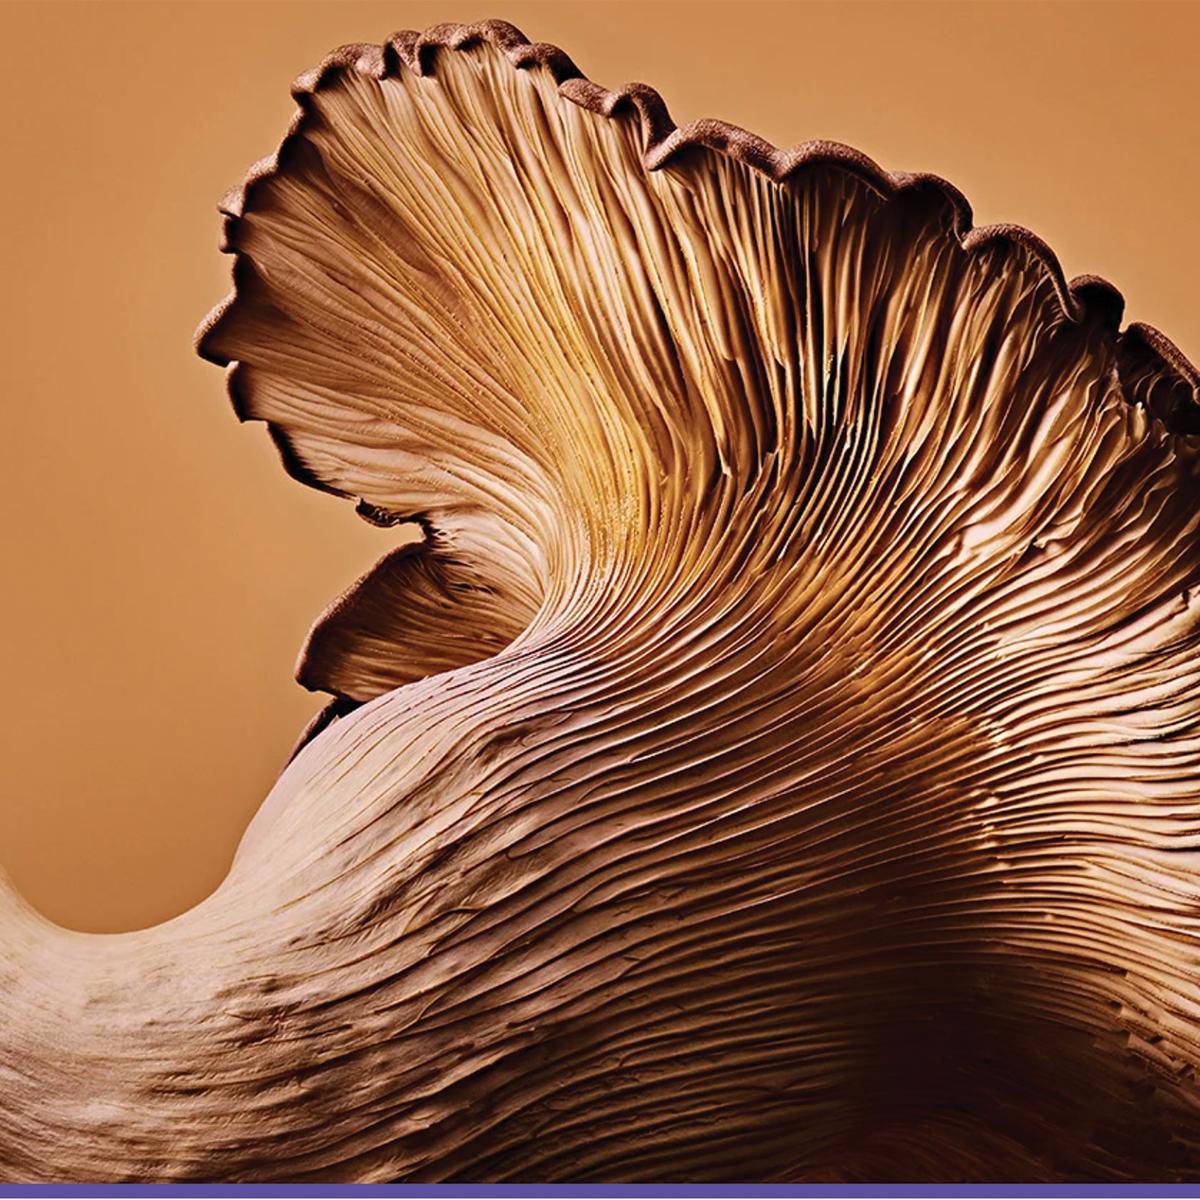 Beech mushrooms. Ted Cavanaugh for Popular Science